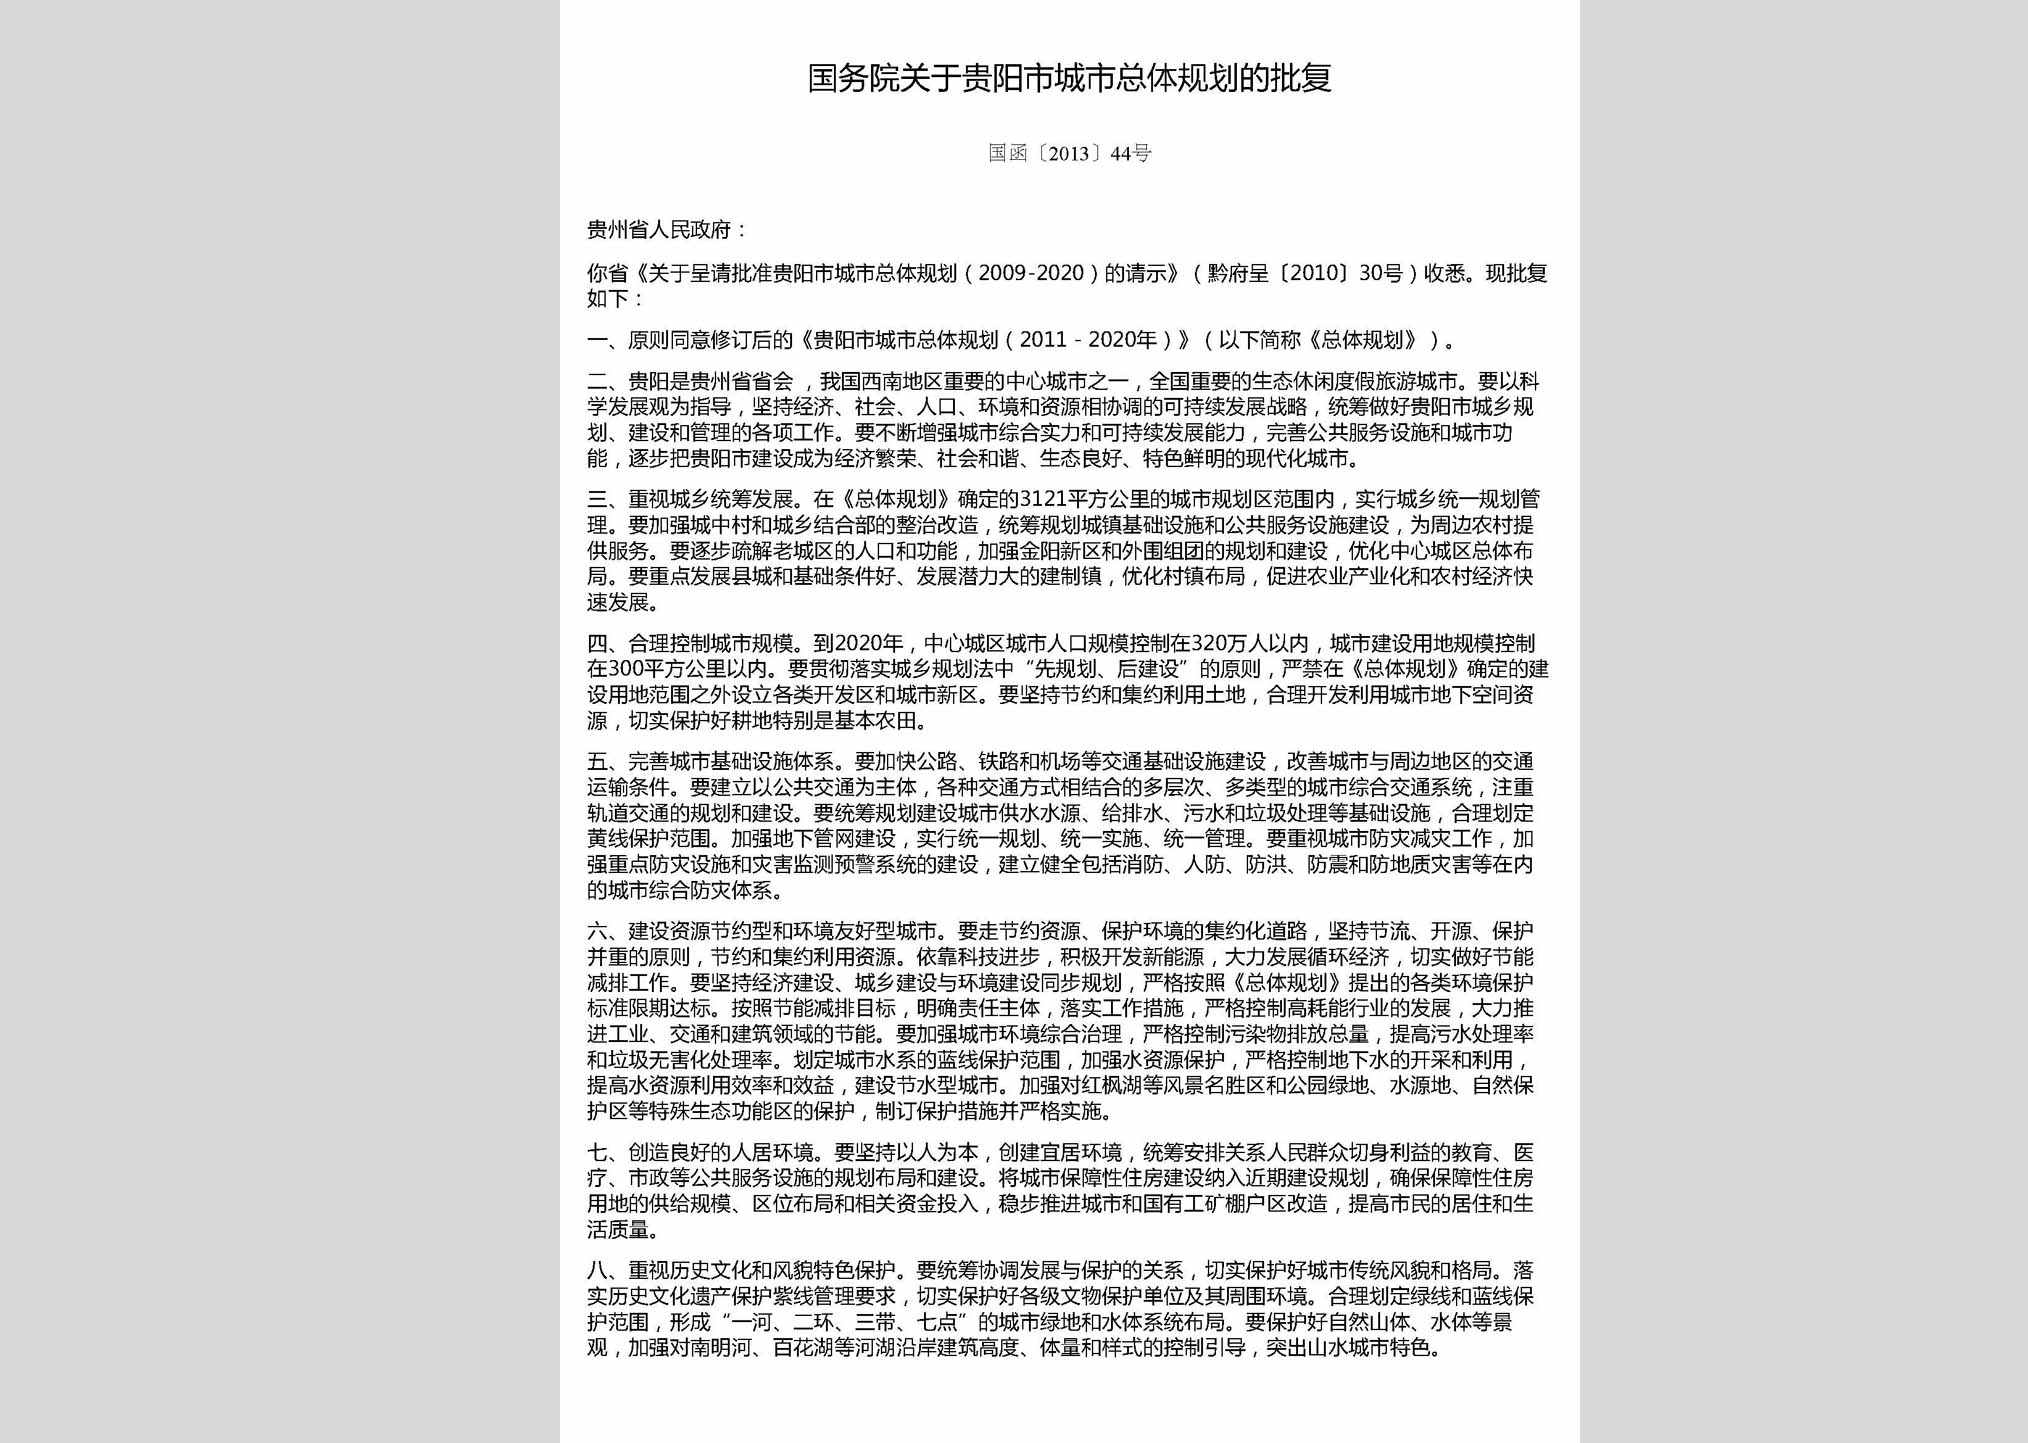 国函[2013]44号：国务院关于贵阳市城市总体规划的批复